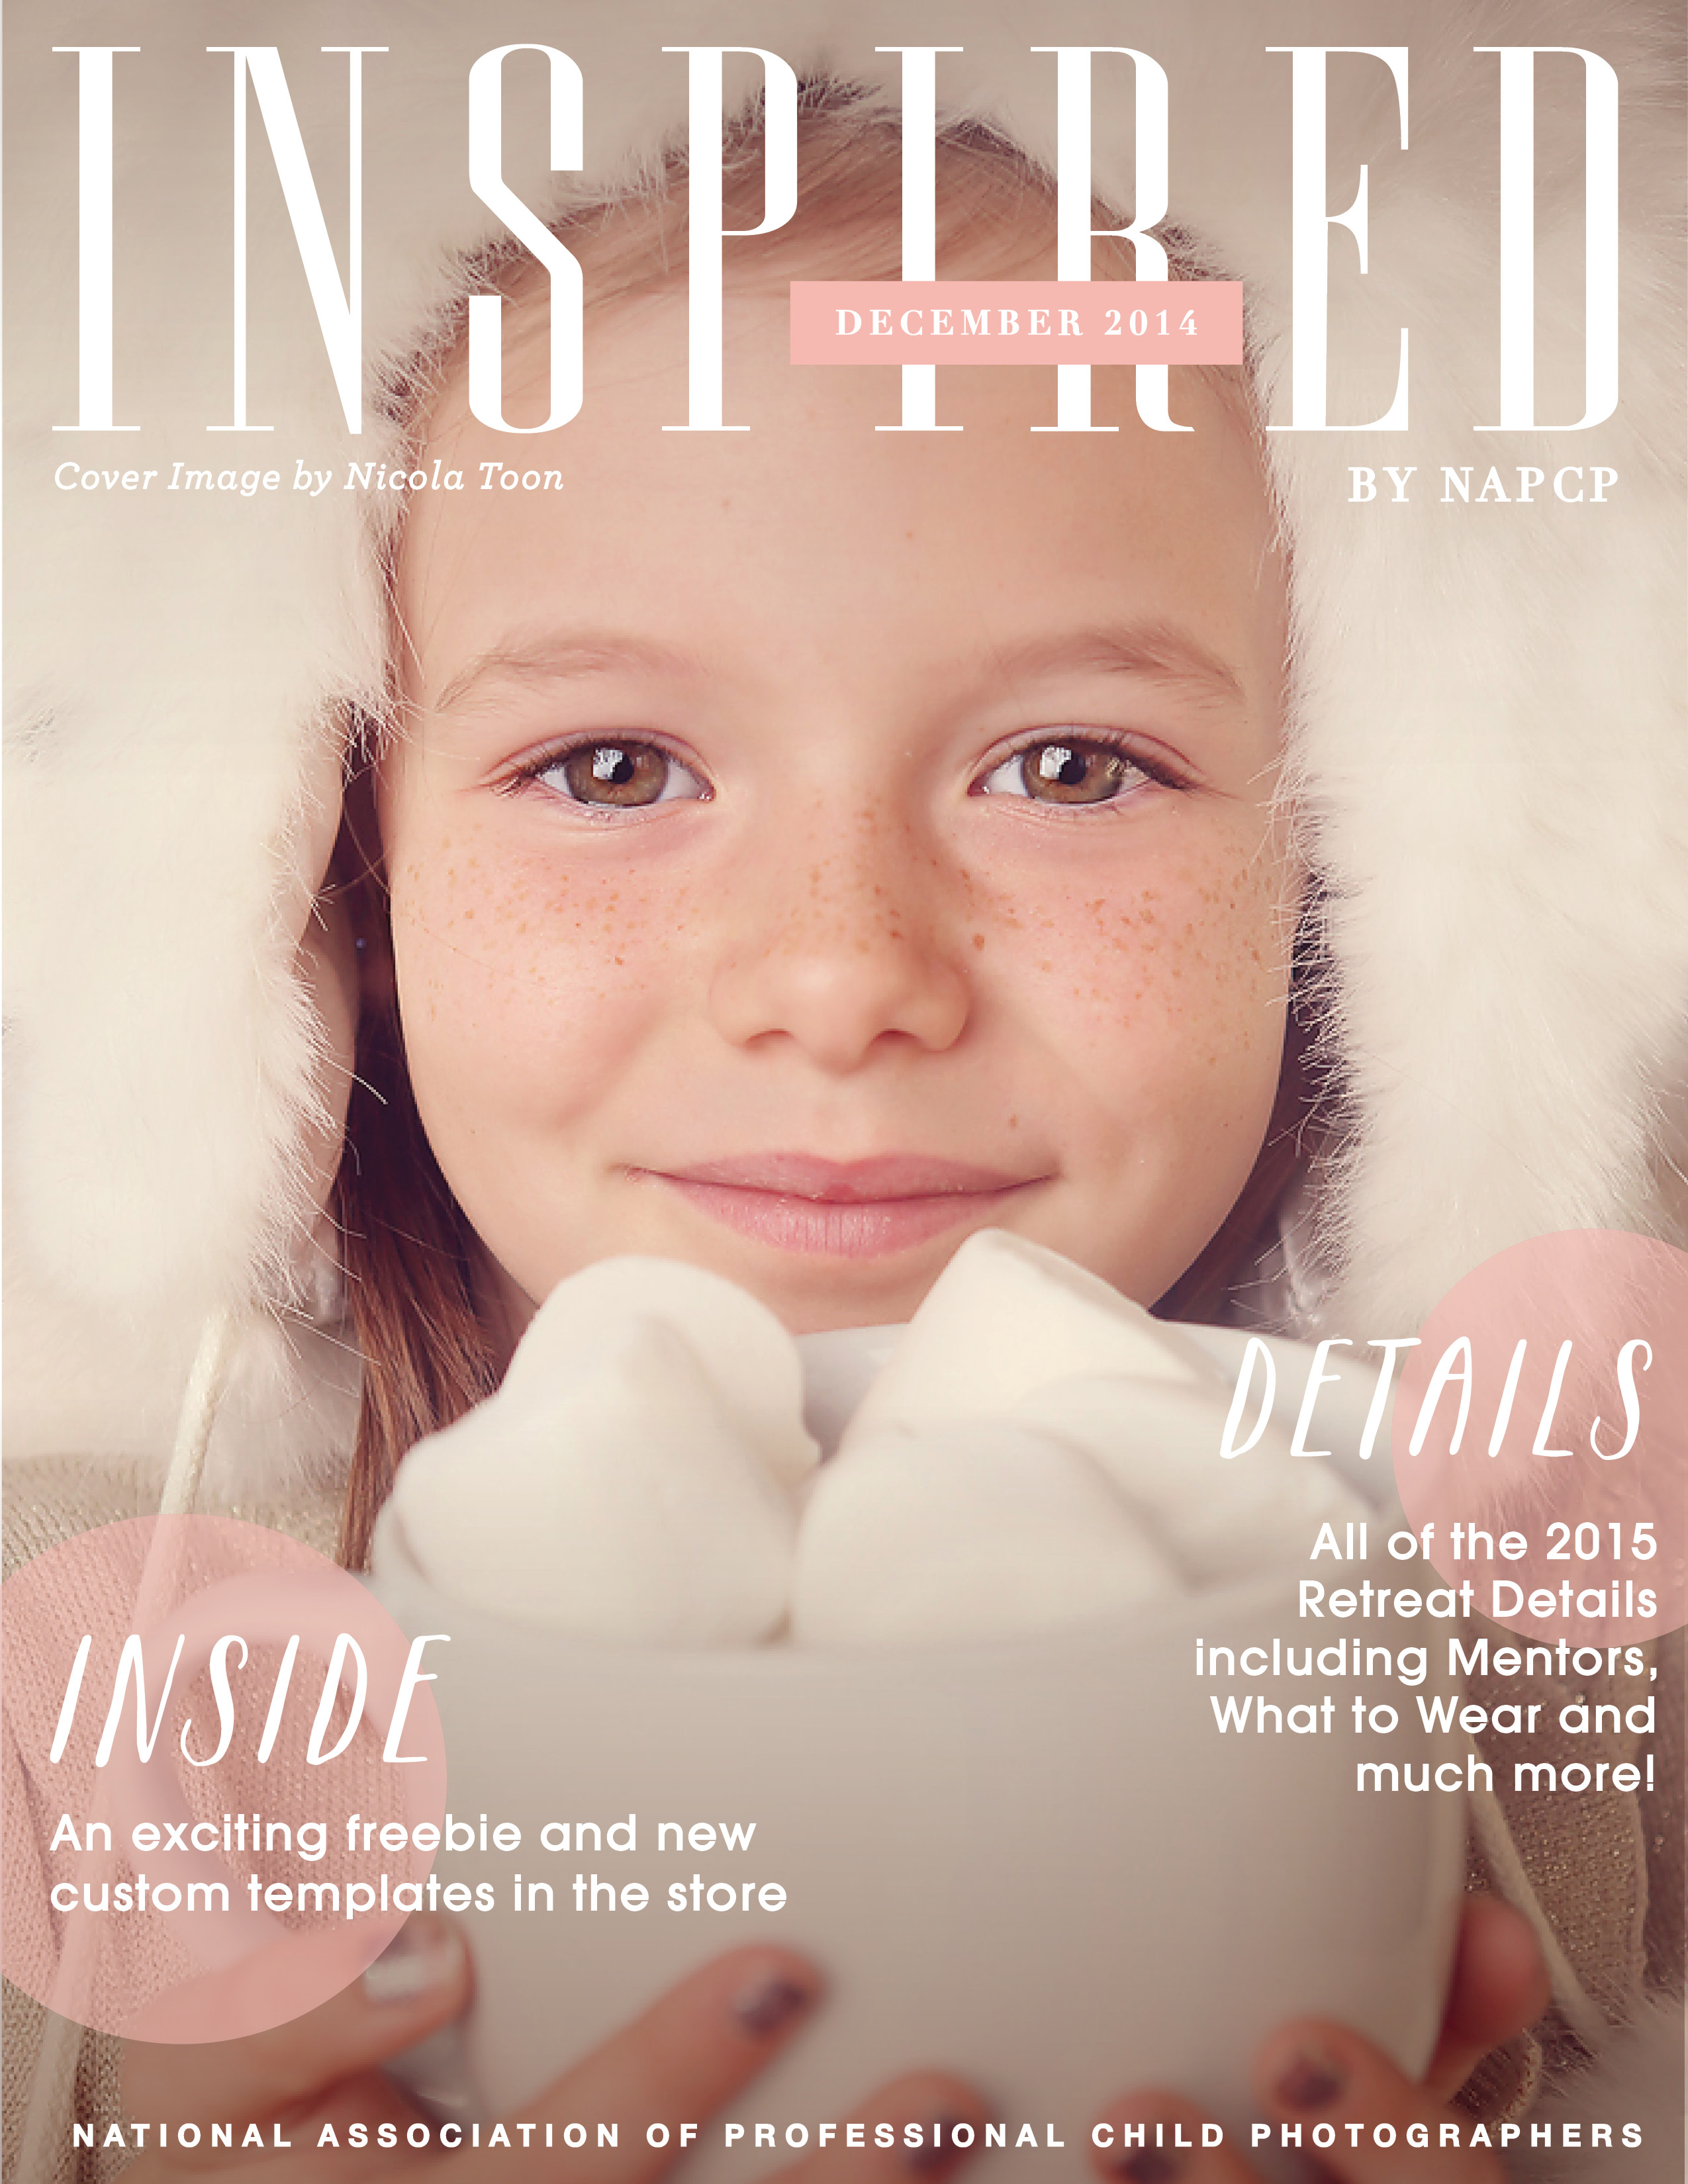 December Newsletter cover